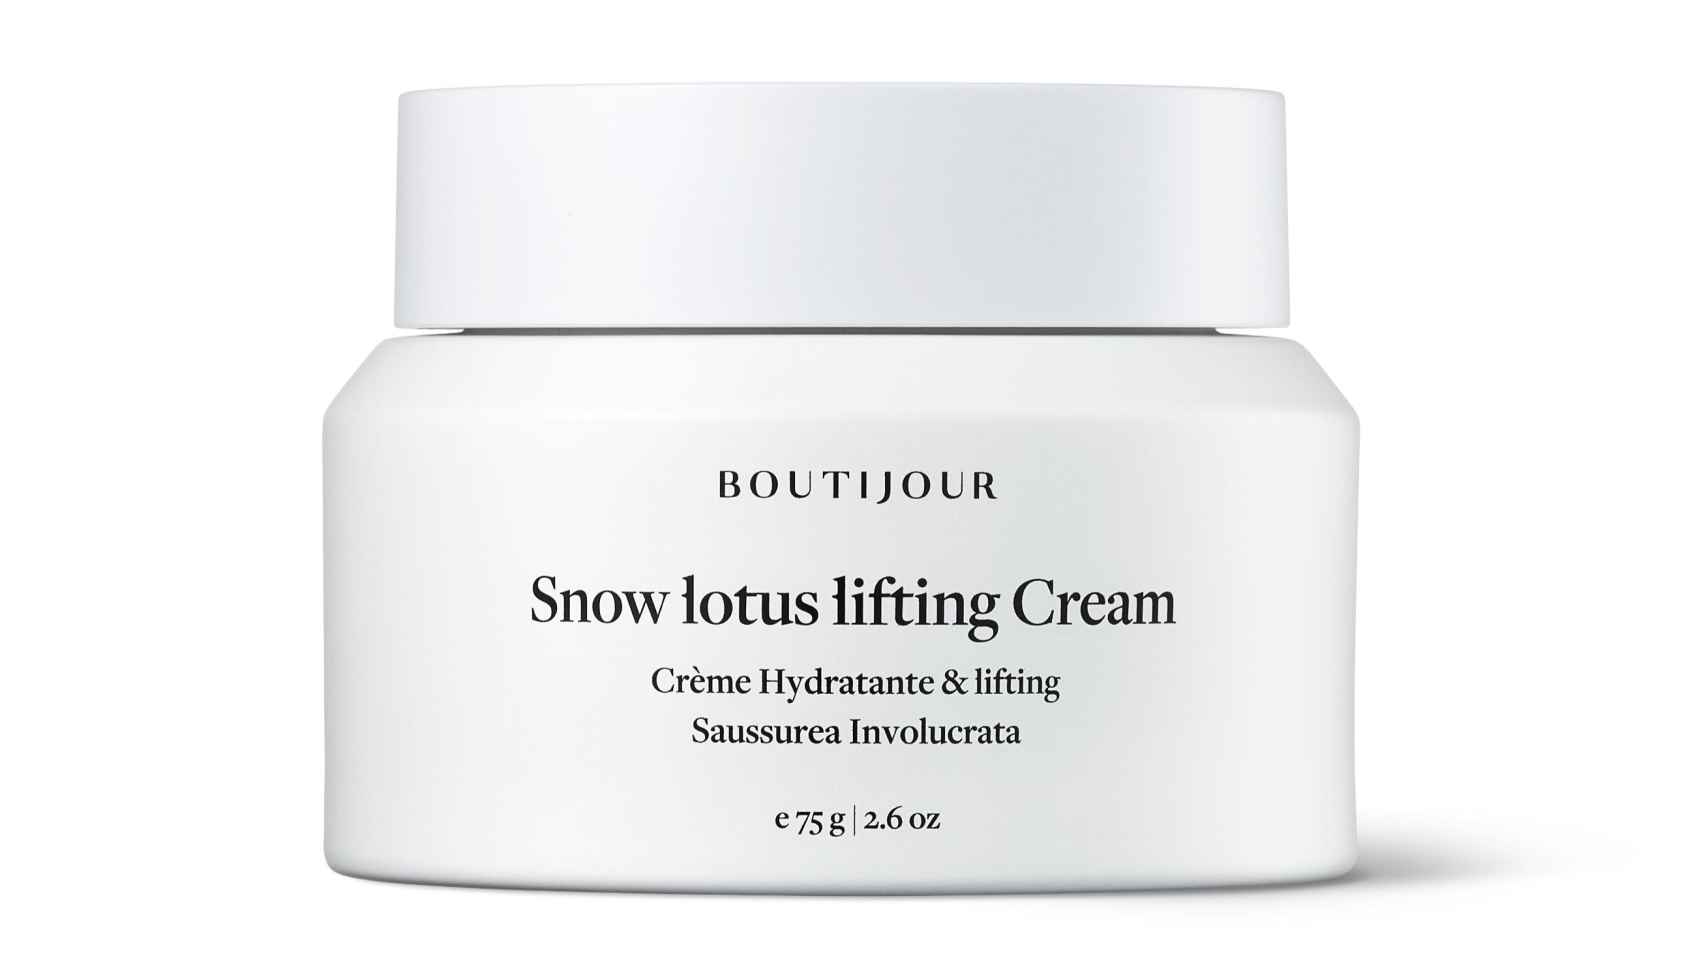 Snow Lotus Lifting Cream de Boutijour Crema reafirmante con loto de nieve, extracto de raíz de regaliz y niacinamida 109 € purenichelab.com